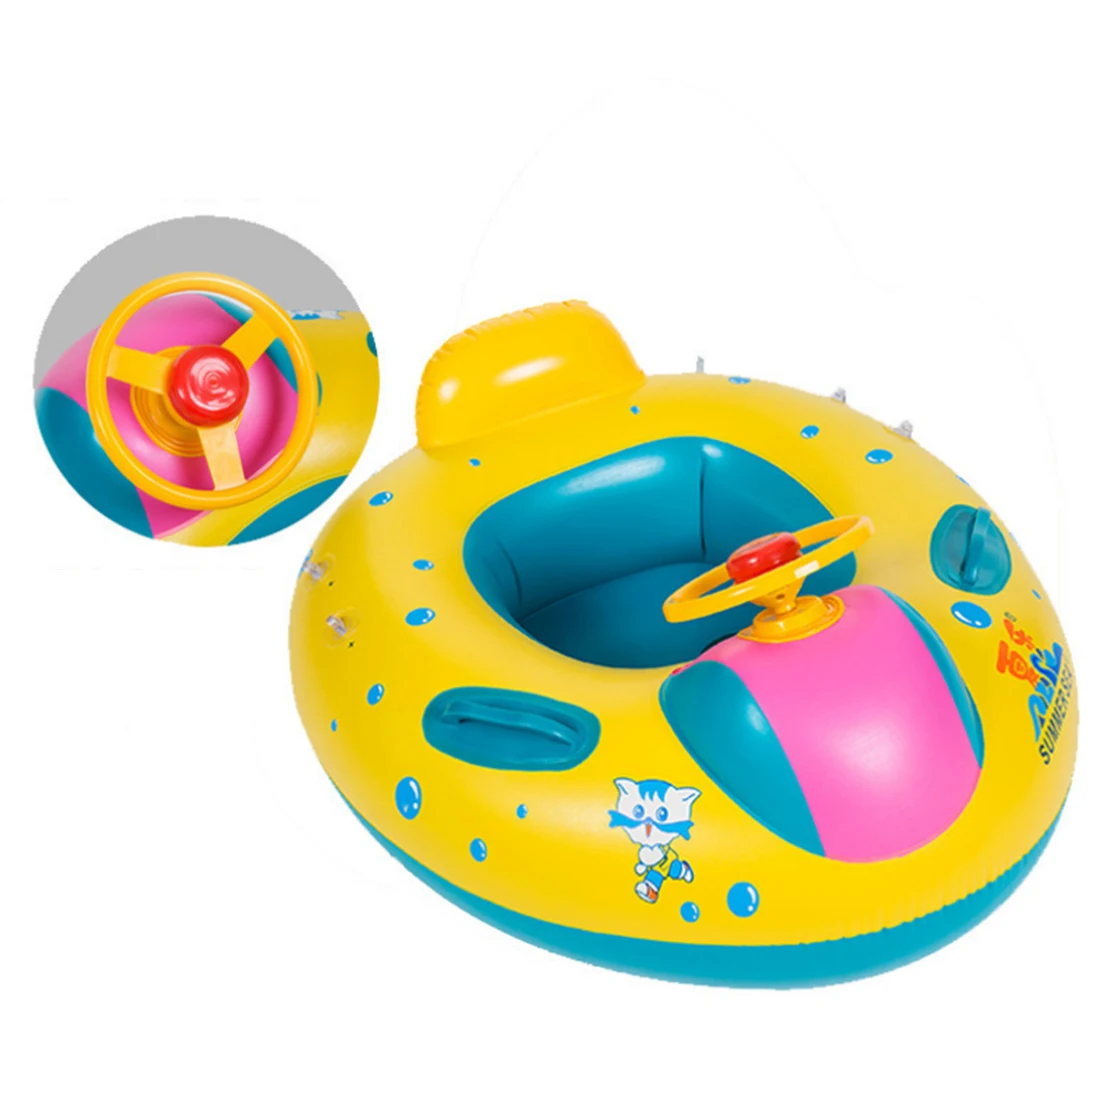 Надувной детский бассейн игрушки для купания кольцо лодка с солнечным навесом игрушки для возраста 16-36 месяцев Детские поплавки